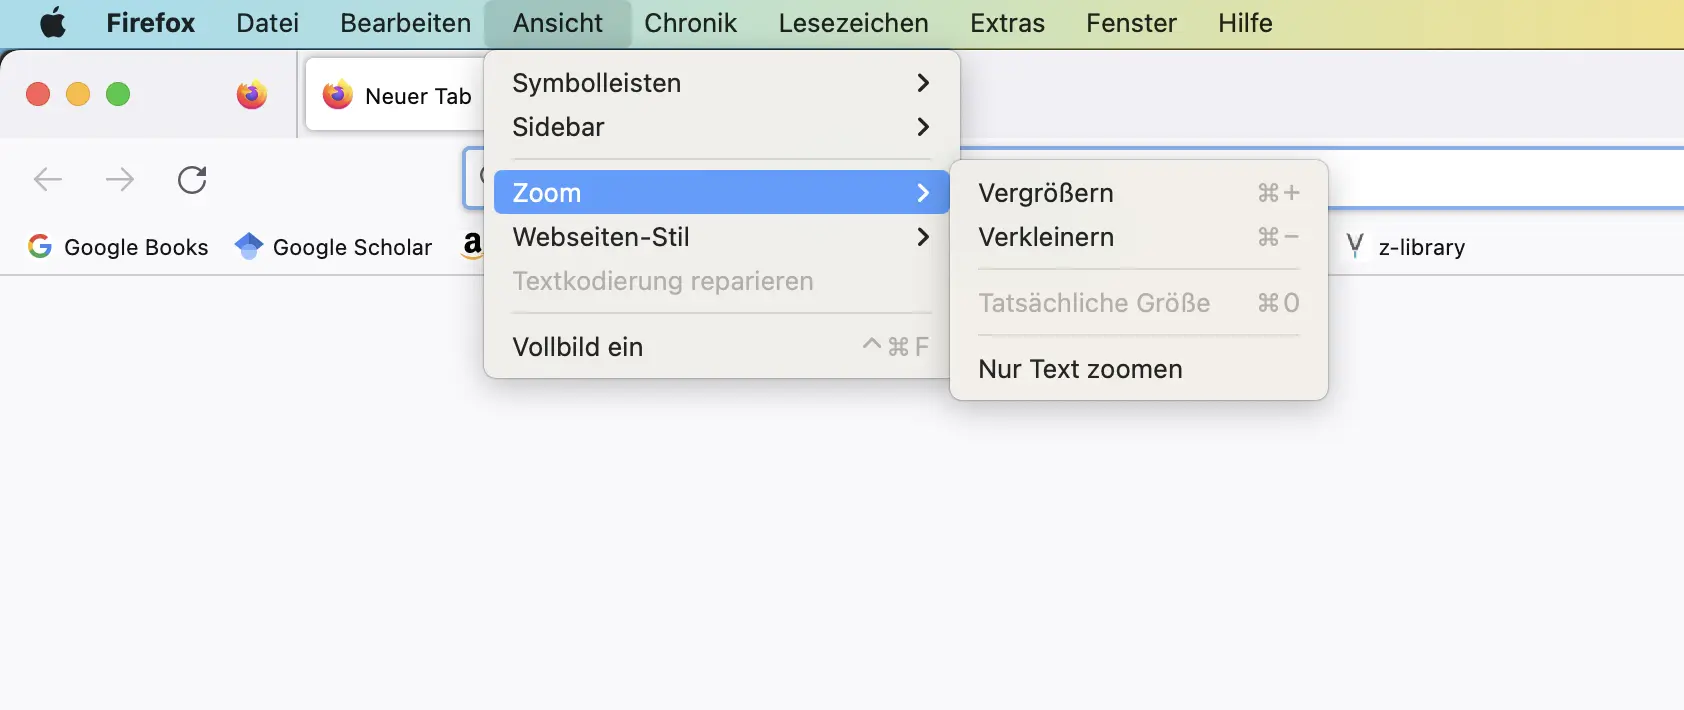 Ansicht wie man die Schriftgröße in Firefox ändert